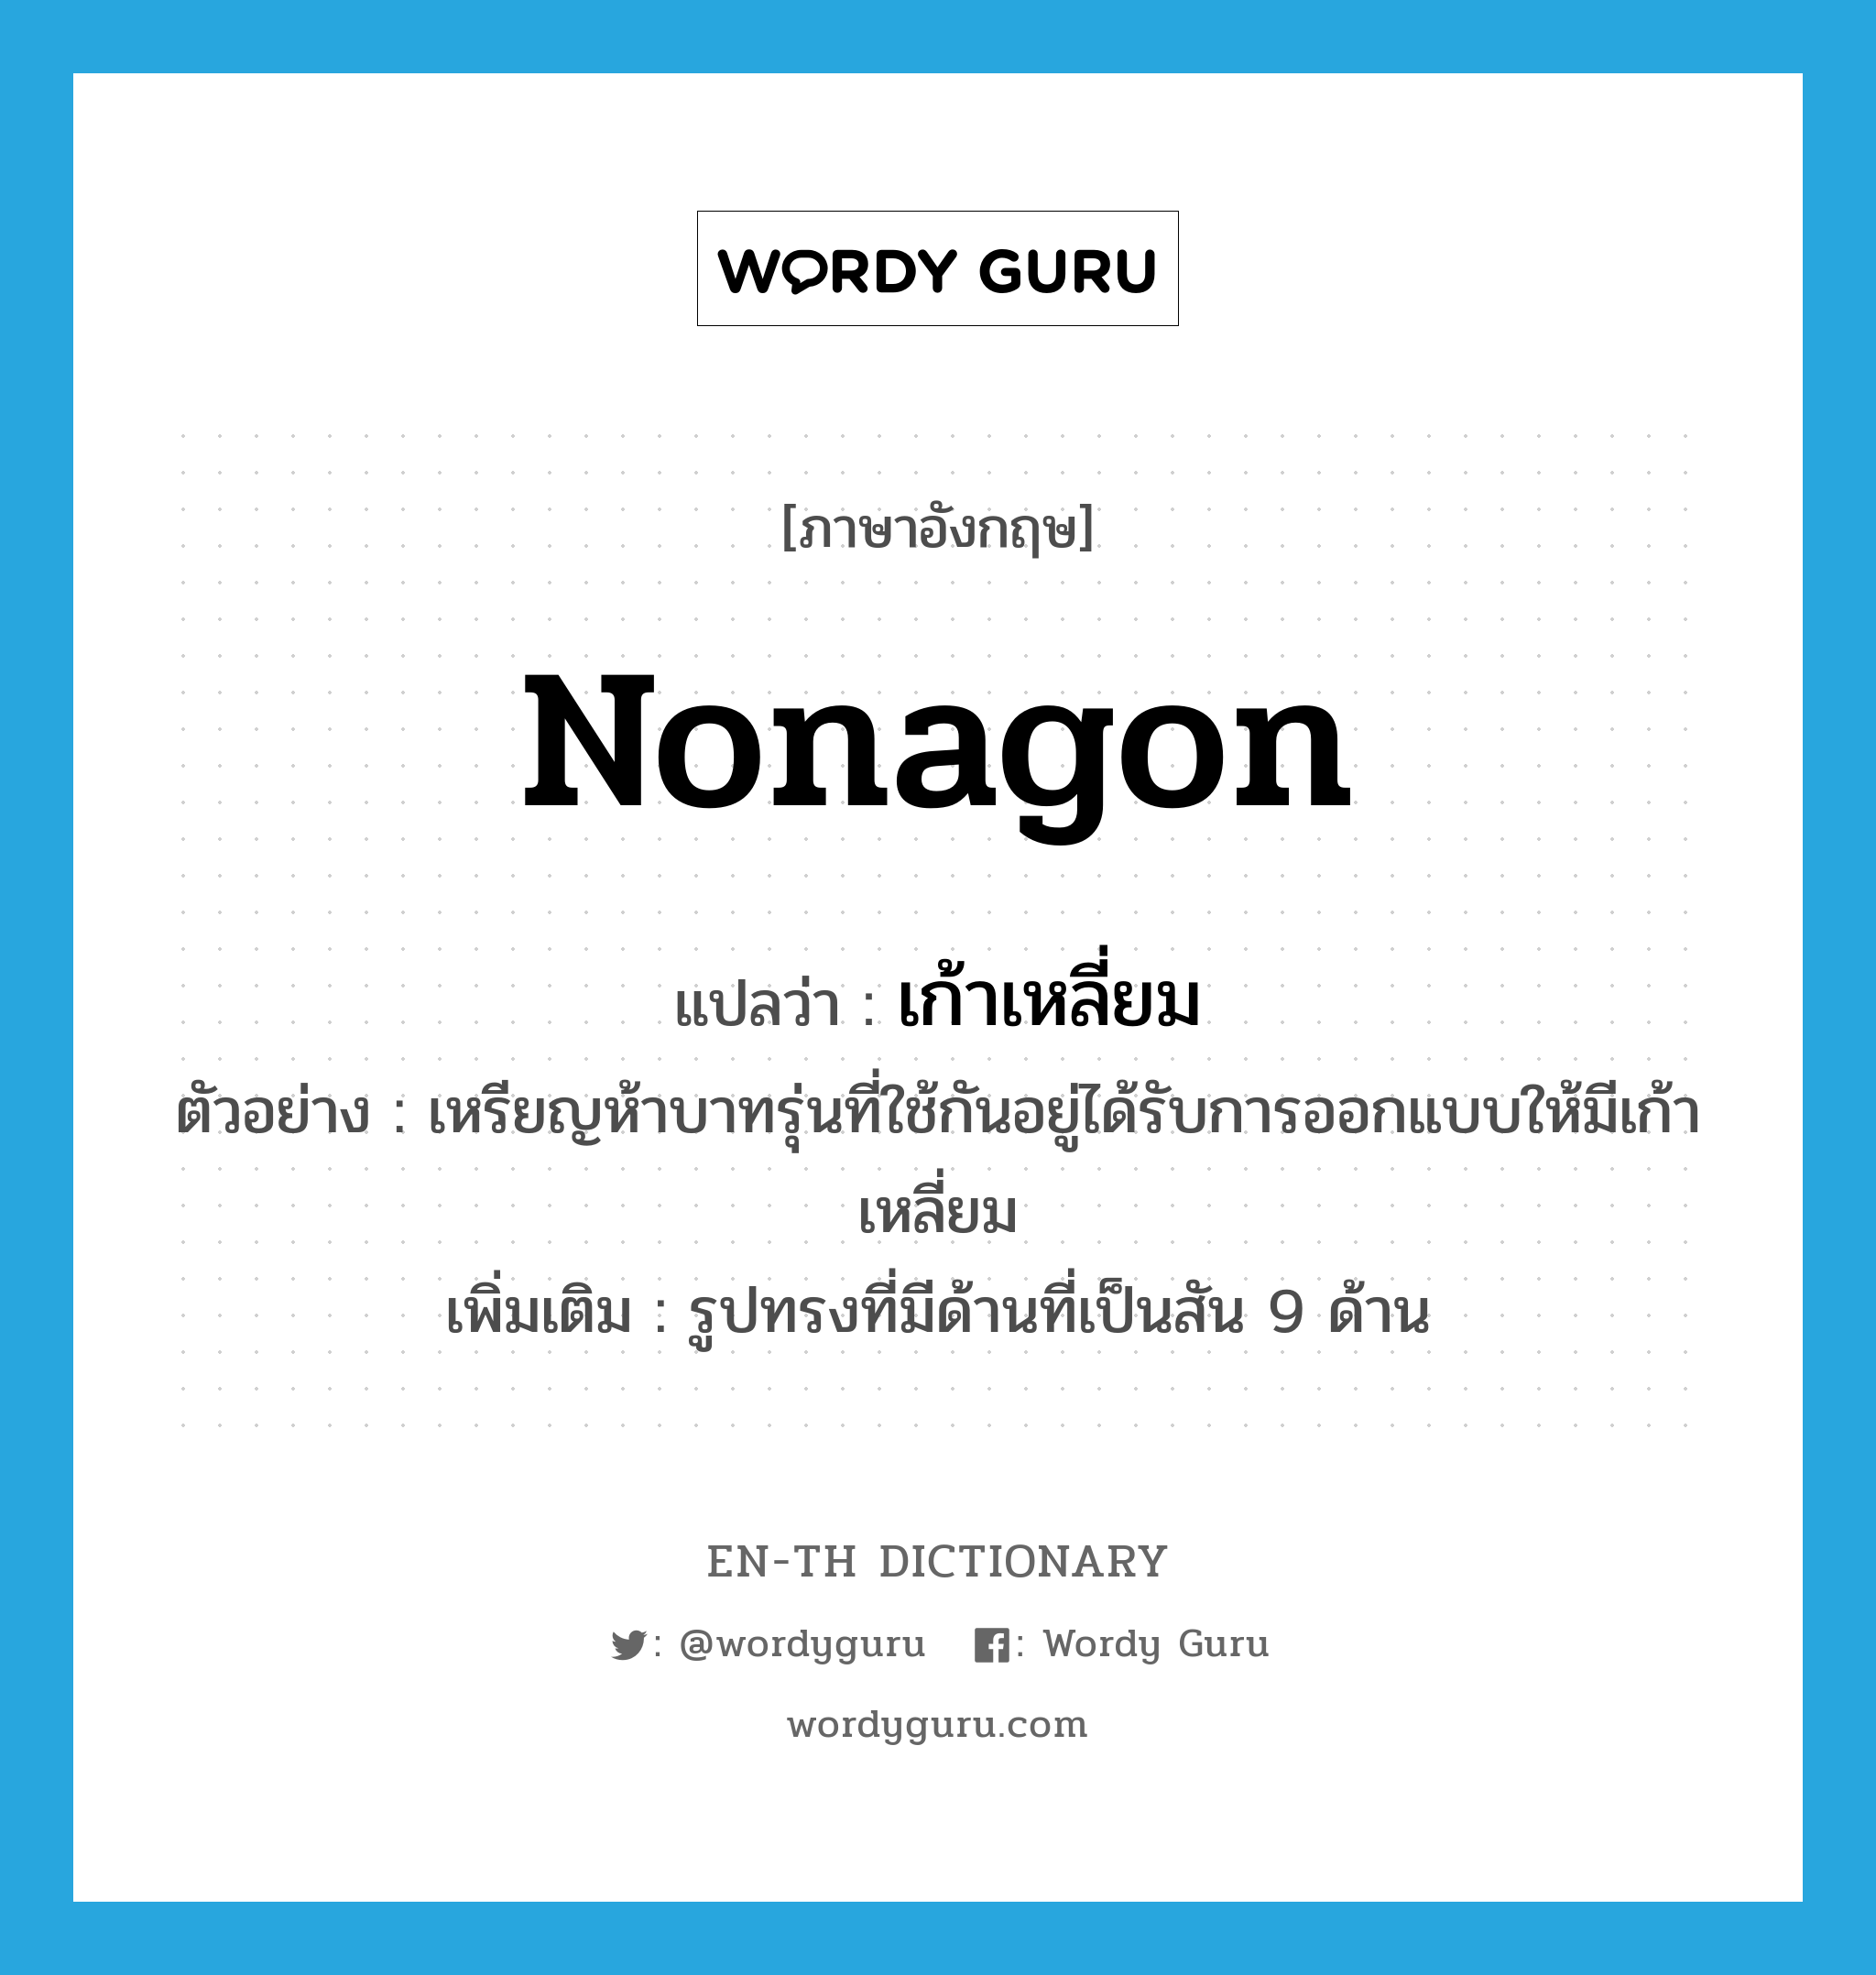 nonagon แปลว่า?, คำศัพท์ภาษาอังกฤษ nonagon แปลว่า เก้าเหลี่ยม ประเภท N ตัวอย่าง เหรียญห้าบาทรุ่นที่ใช้กันอยู่ได้รับการออกแบบให้มีเก้าเหลี่ยม เพิ่มเติม รูปทรงที่มีด้านที่เป็นสัน 9 ด้าน หมวด N